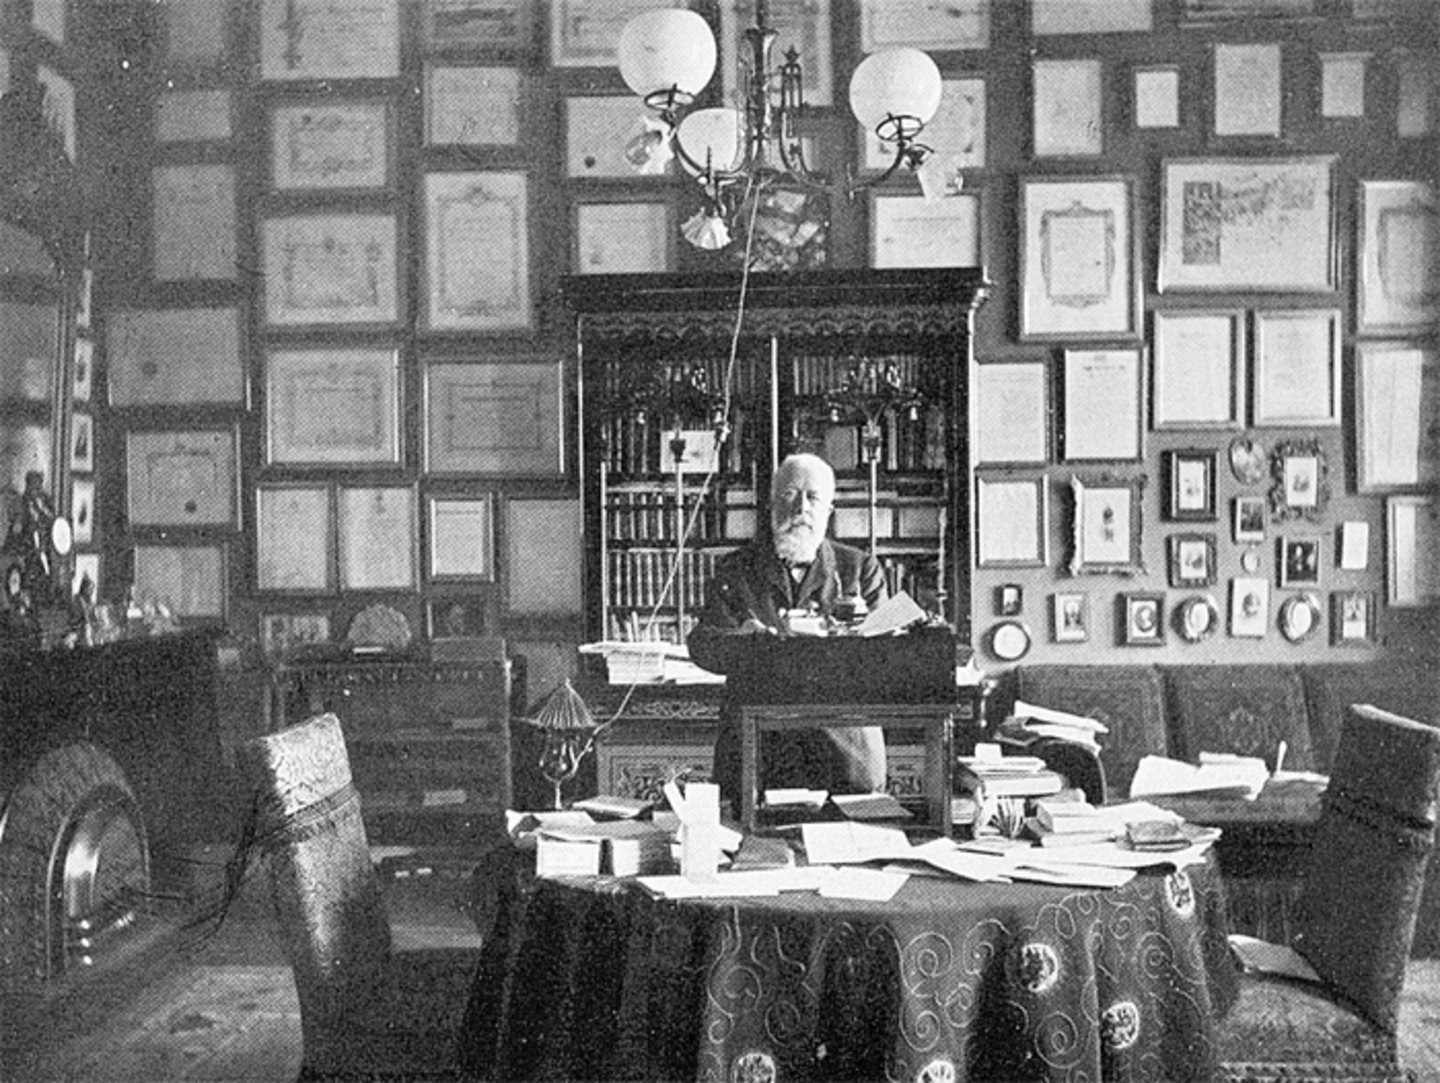 Ein Foto von Johannes Fastenrath in seinem Arbeitszimmer wie er an einem Schreibtisch sitzt, den Blick zur Kamera gerichtet. Die Wand hinter ihm ist gefüllt mit Bilderrahmen und an der Seite ist ein Kamin zu erkennen.